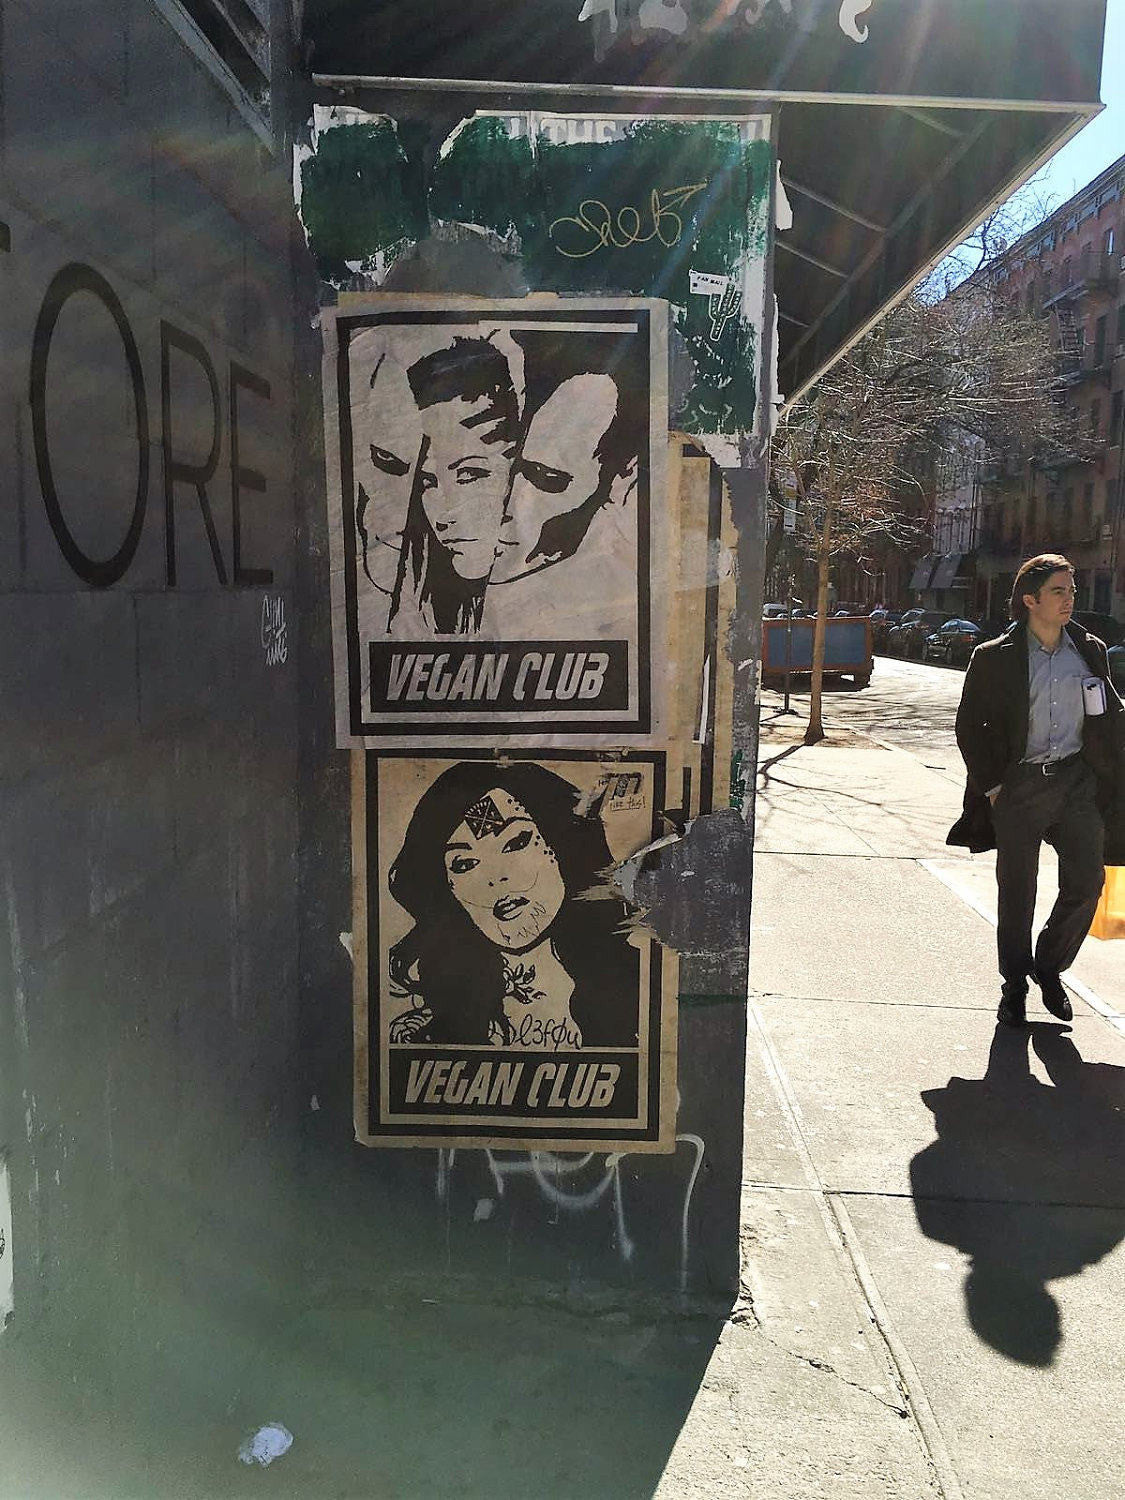 Street Art NewsPrint Poster Vegan Club the Misfits Alissa White-Gluz Signed L3f0u - model @alissawhitegluz_fanclub